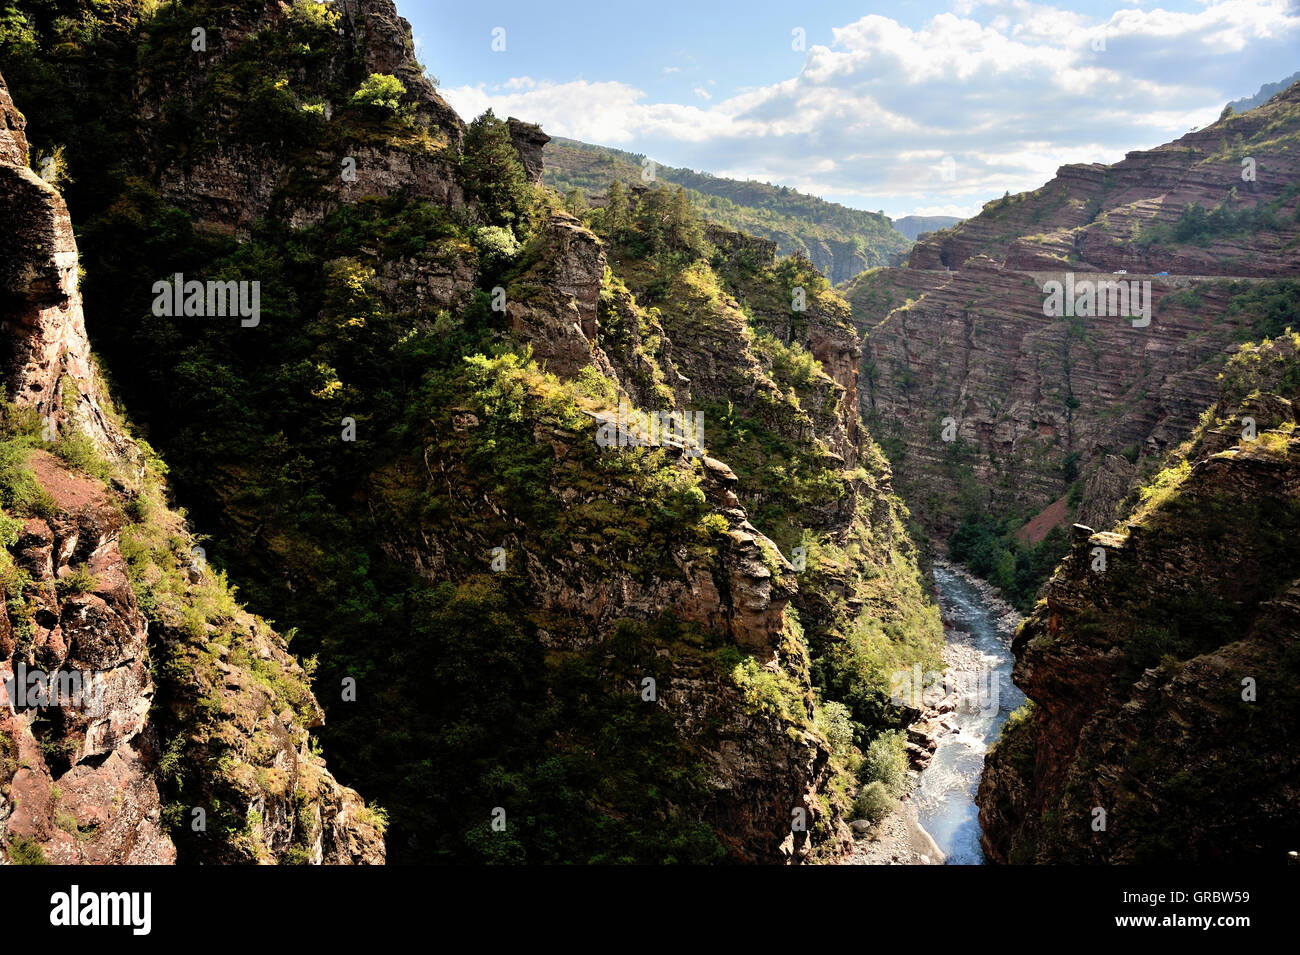 Gorges De Daluis und seinen Fluss, Tal der wilden Seealpen, Französische Alpen, Frankreich Stockfoto